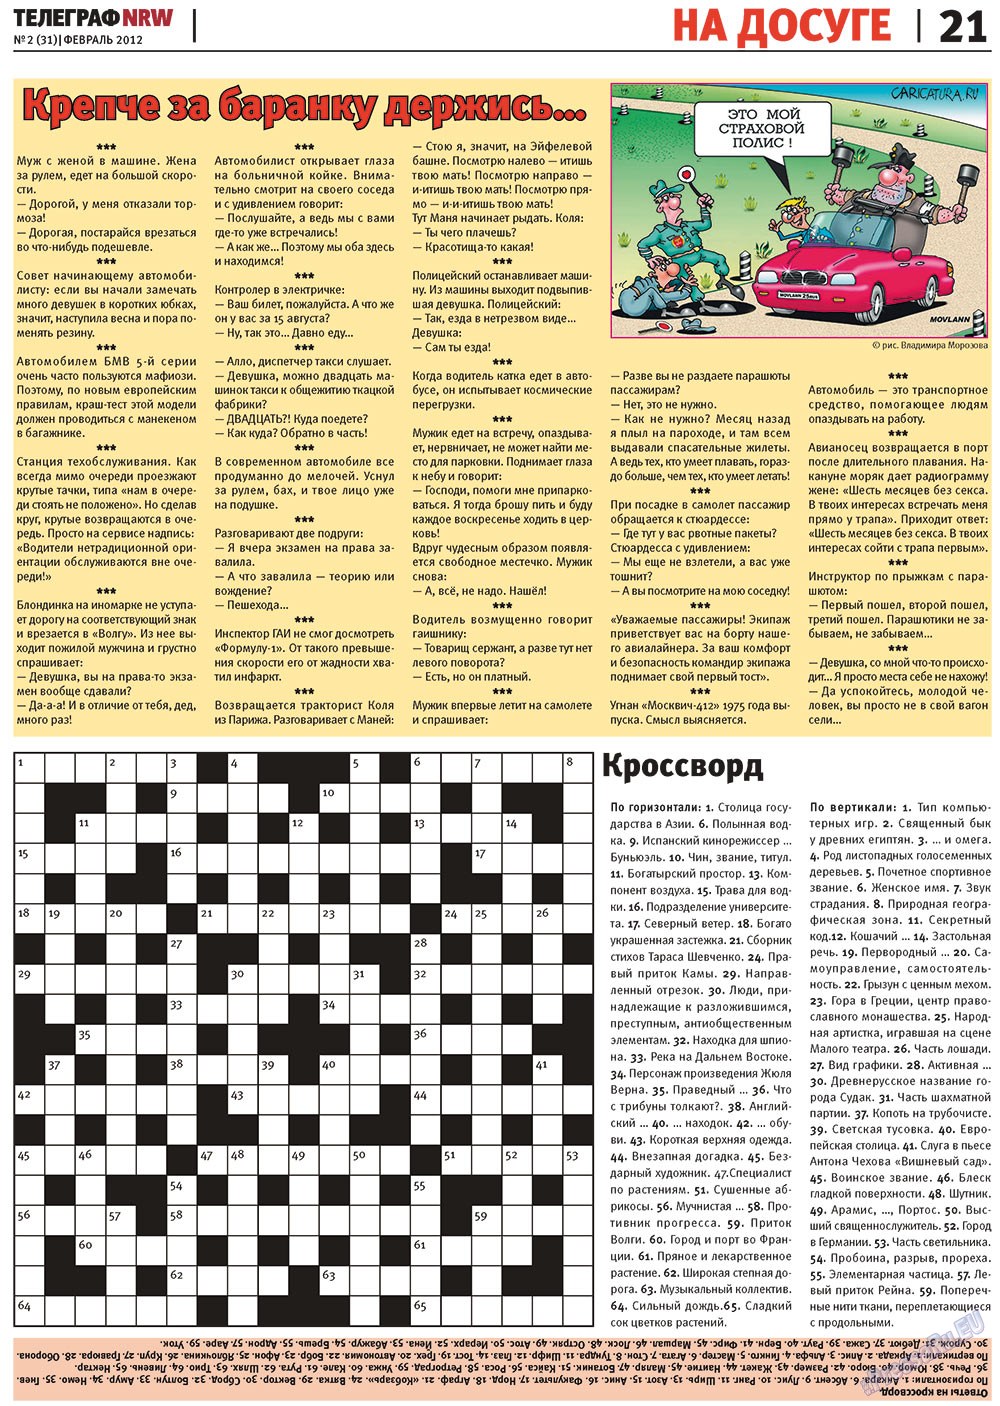 Телеграф NRW (газета). 2012 год, номер 2, стр. 21